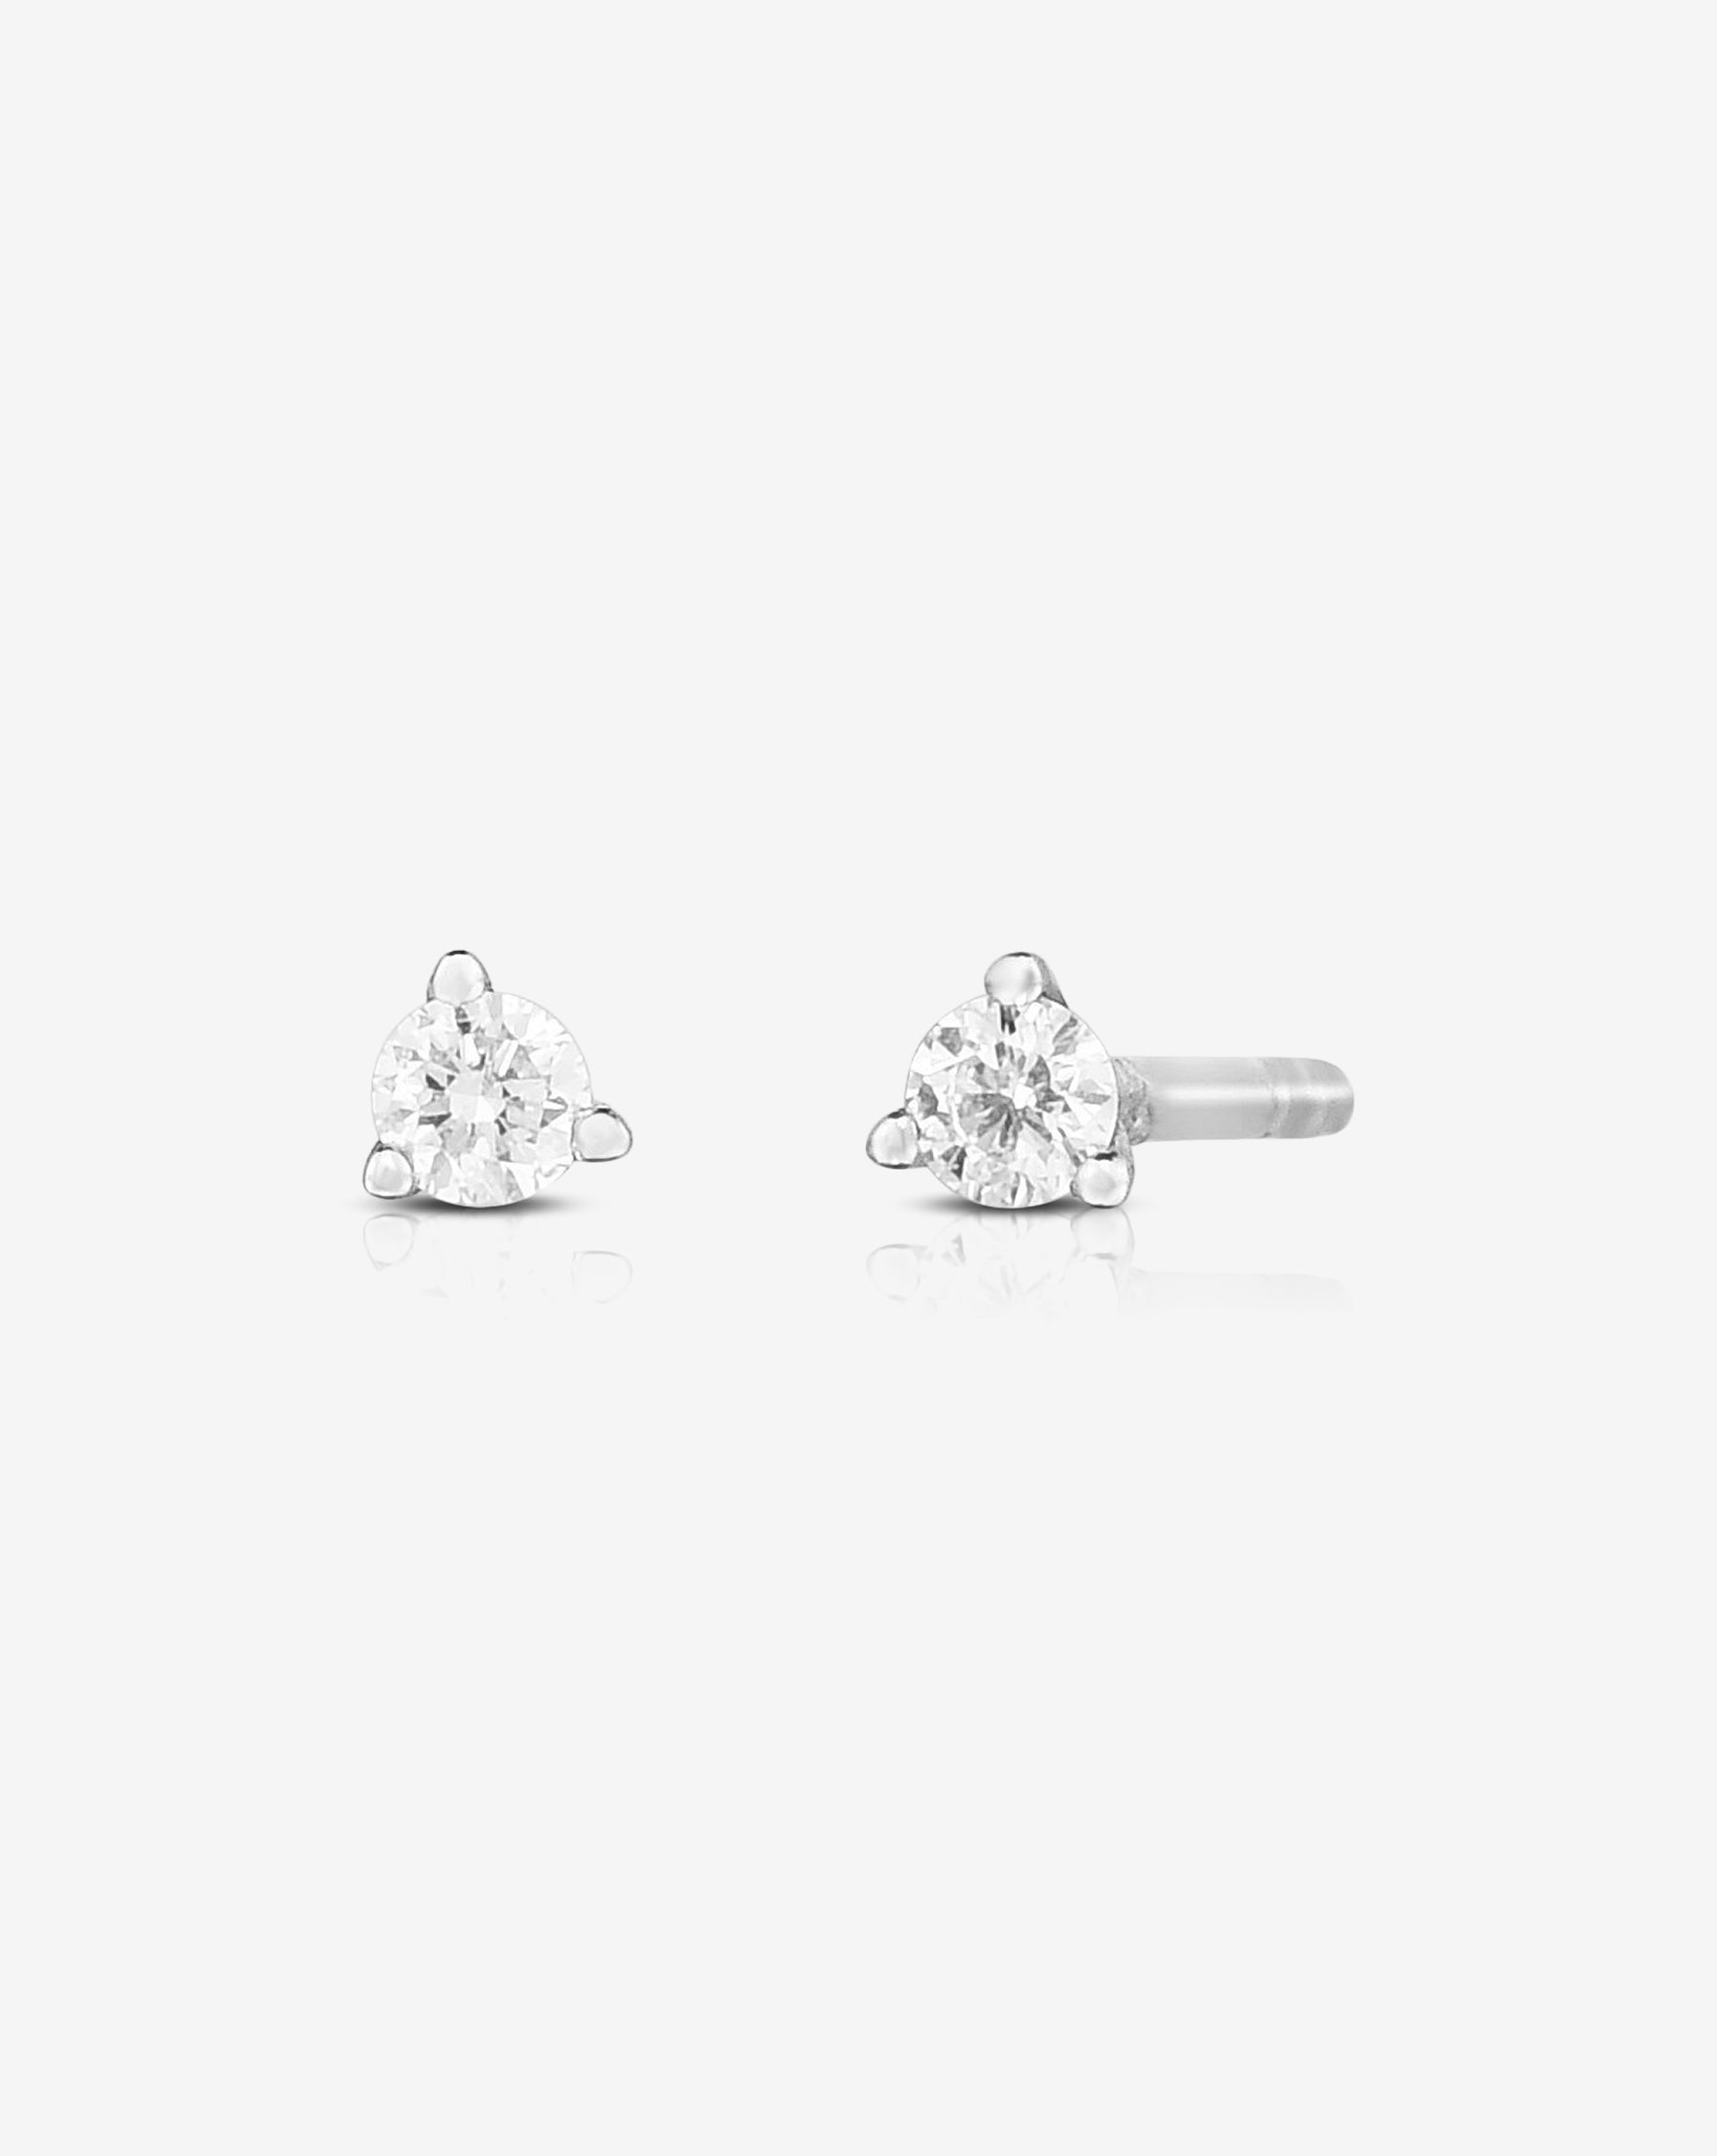 Black Rose Stud Earrings, Cz Diamond Stud Earrings, Tiny Rose Gold Studs, Stud  Earrings, Cartilage Piercings, Upper Ear, 421N - Etsy | Stud earrings, Stud  earrings for men, Rose stud earrings